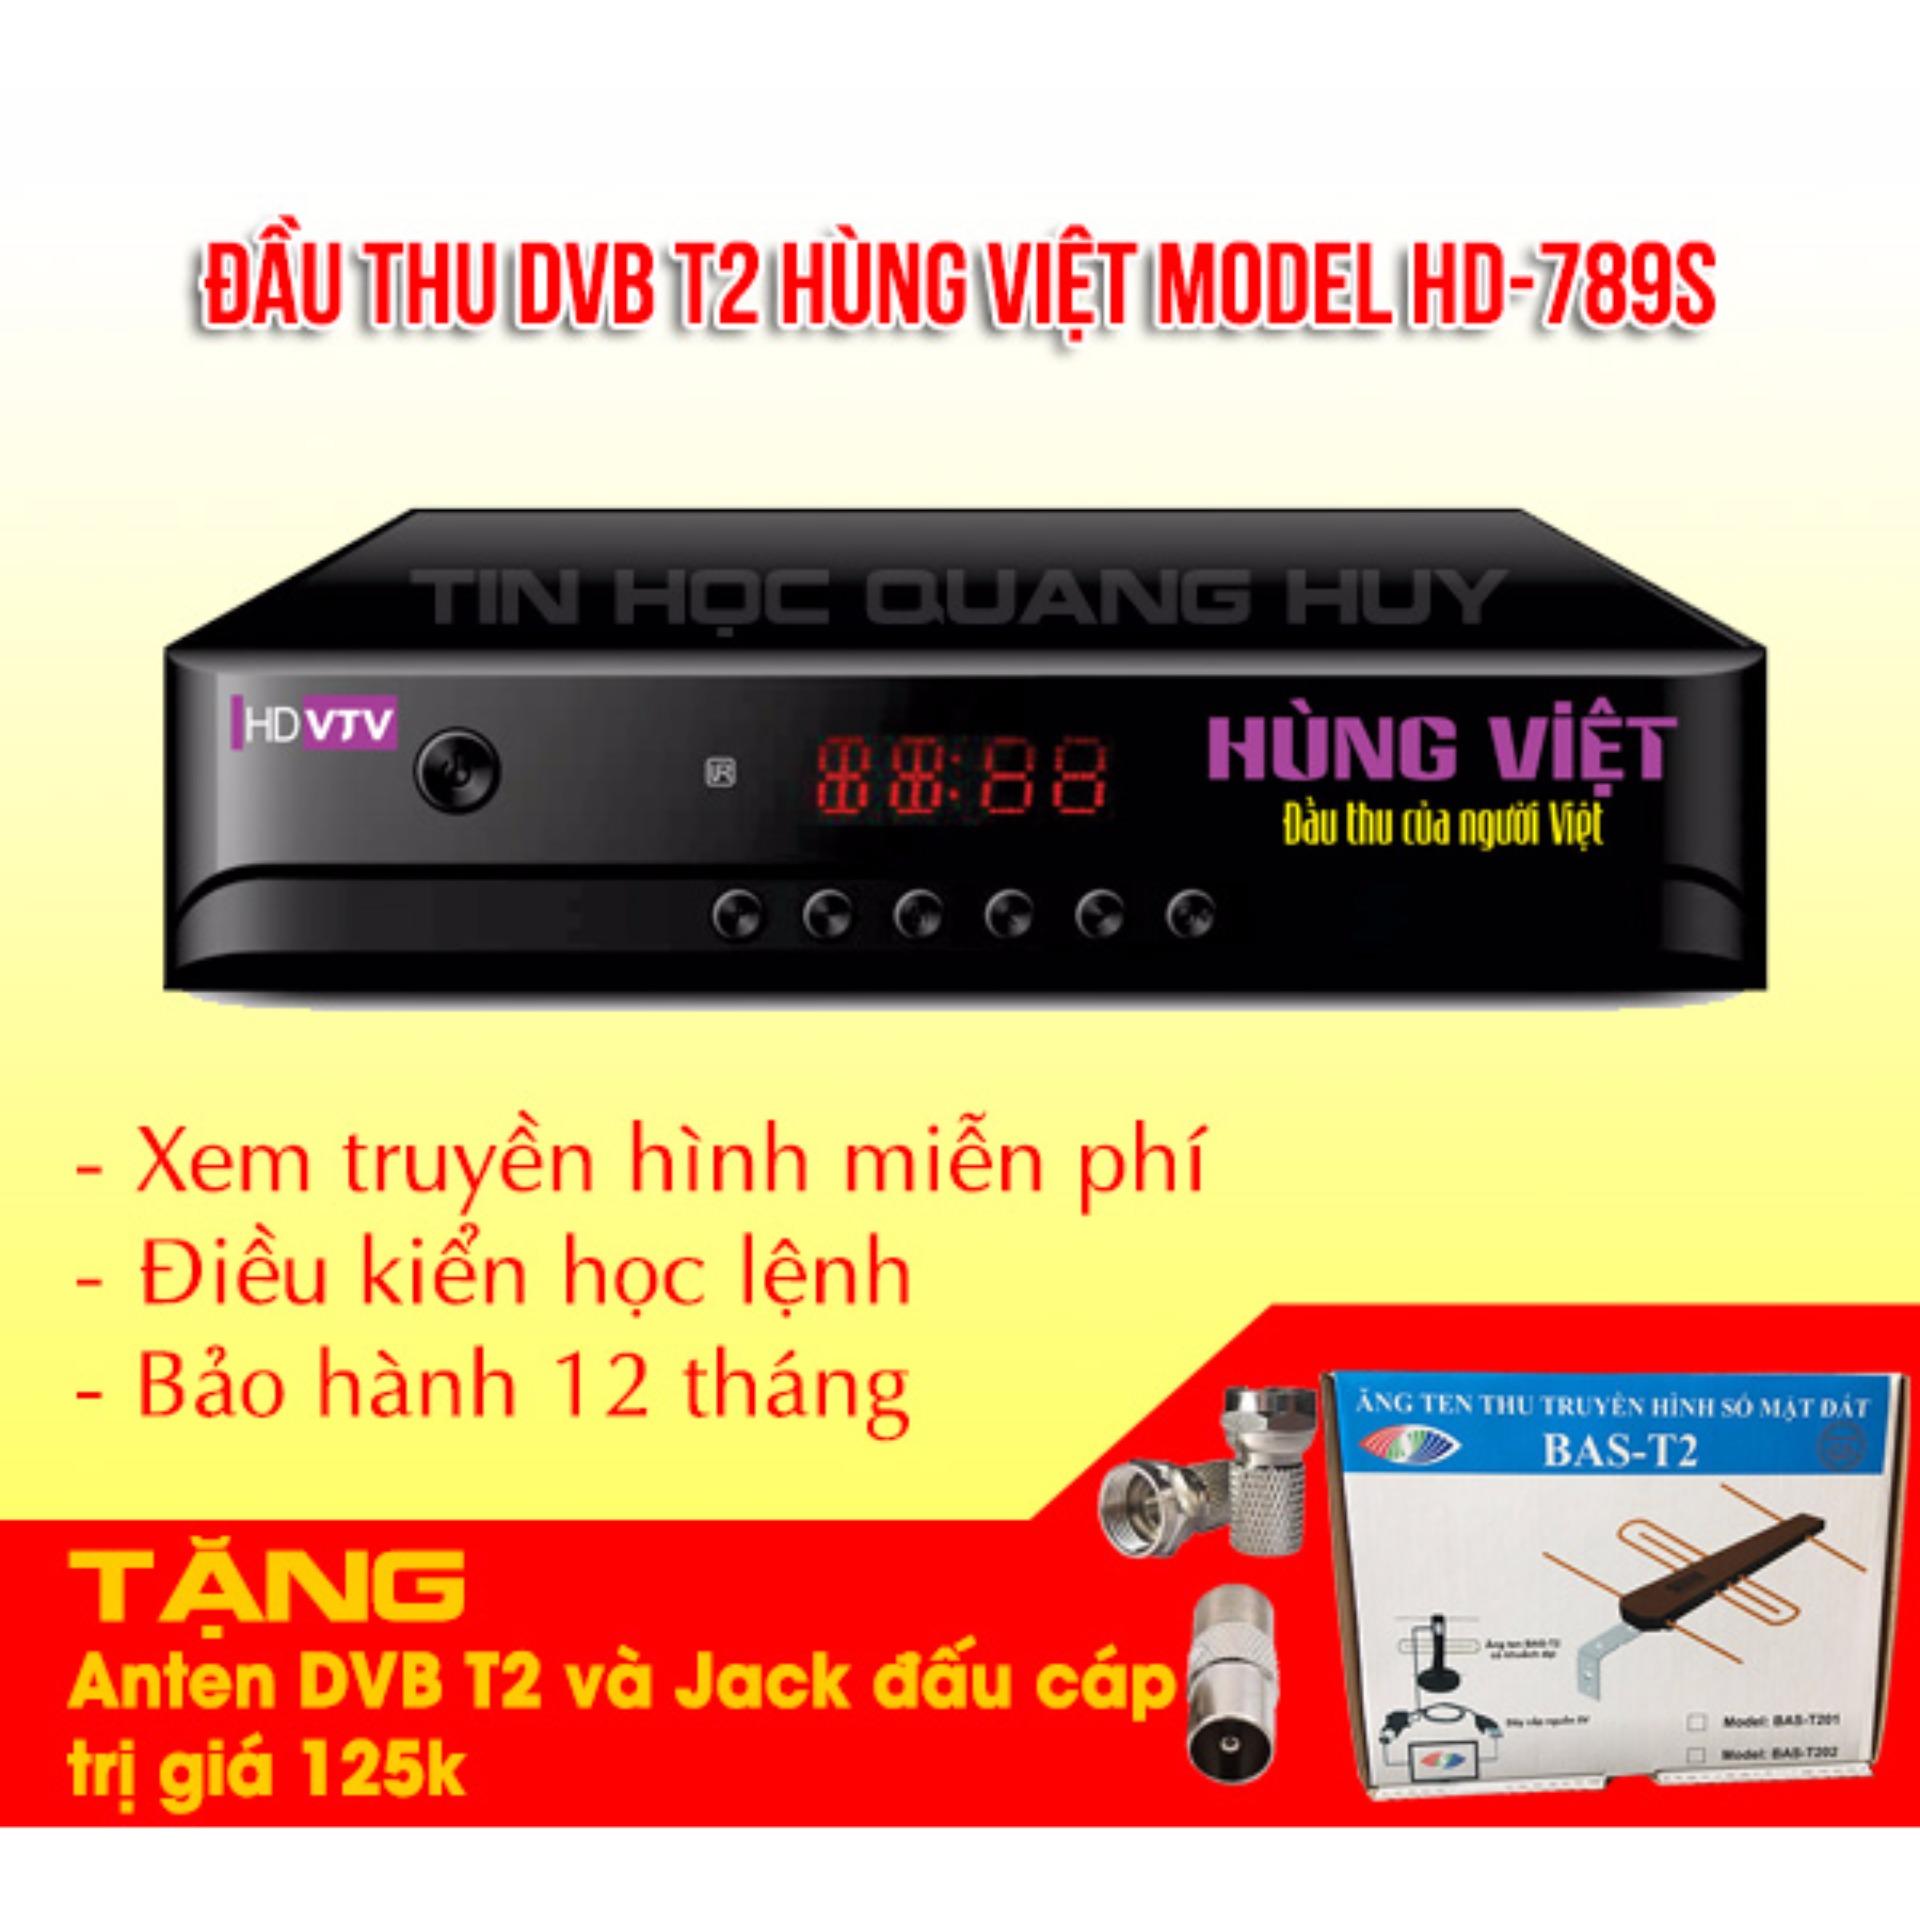 Đầu thu DVB T2 Hùng Việt HD 789s tặng anten khuếch đại và jack nối